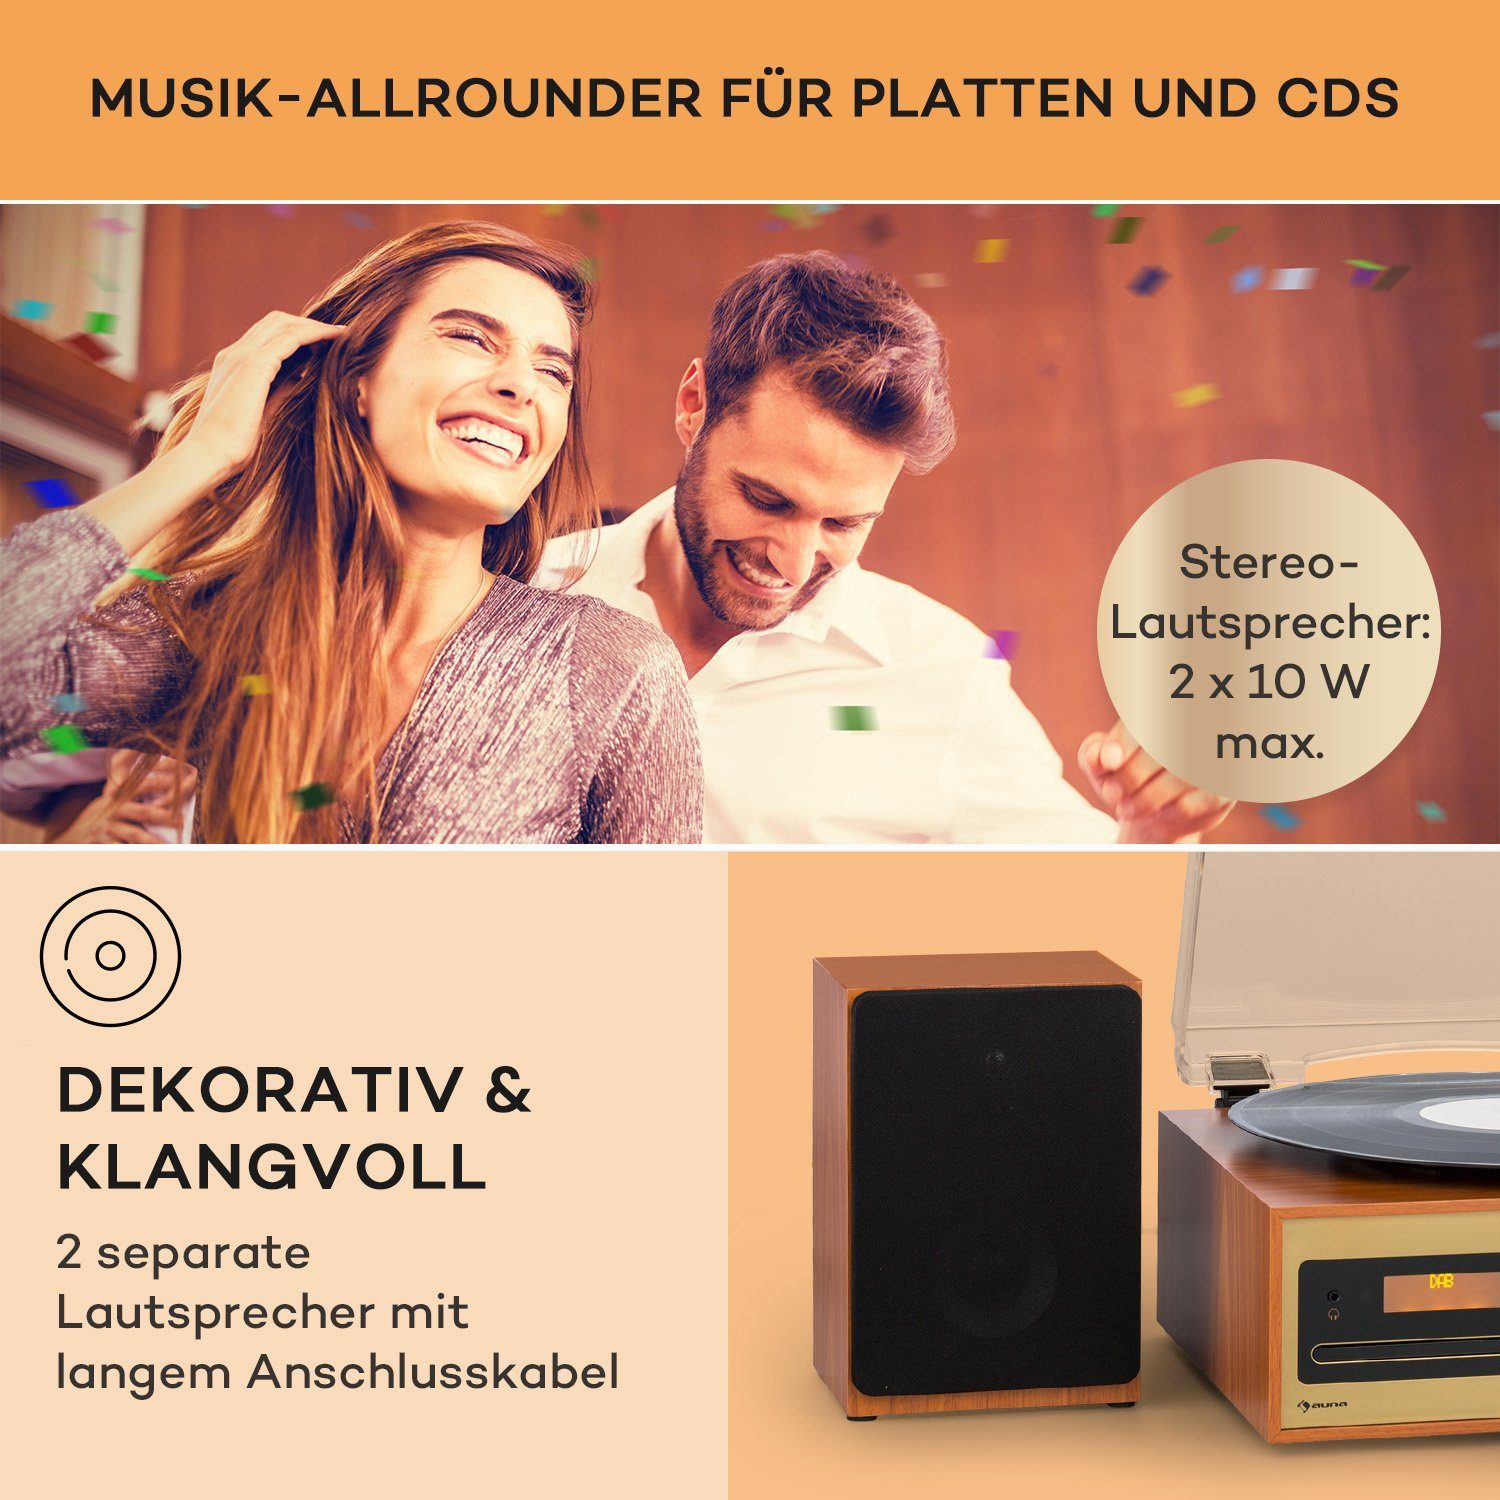 Bluetooth CD Radiotuner, Champagner) FM und Stereon DAB (DAB+ FM Auna Oxford 20 W, Player Stereoanlage SE Vinyl